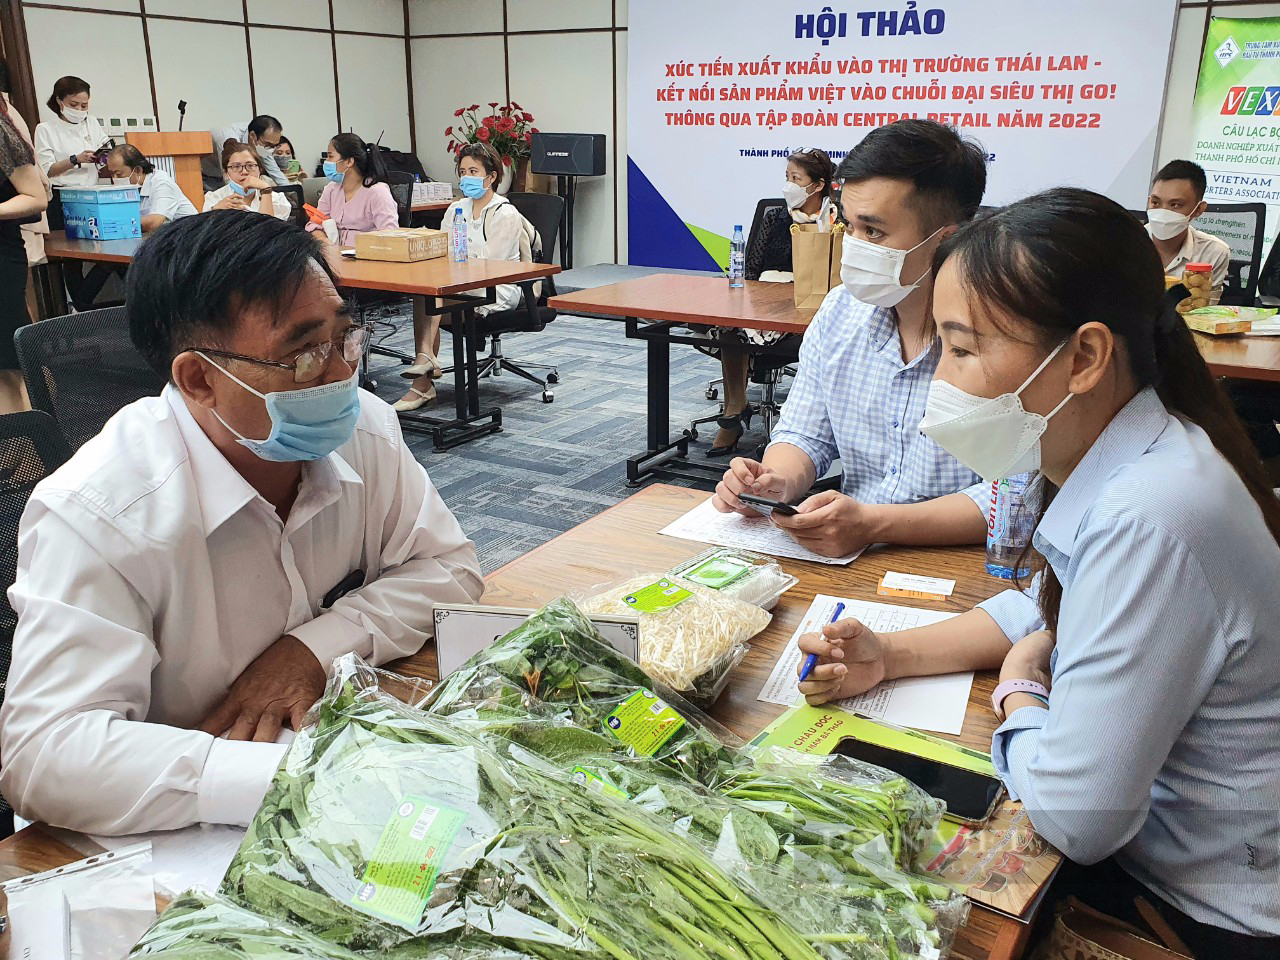 Đại gia bán lẻ Thái Lan tìm nhà cung cấp Việt Nam, đem hàng Việt bán cho người Thái - Ảnh 1.